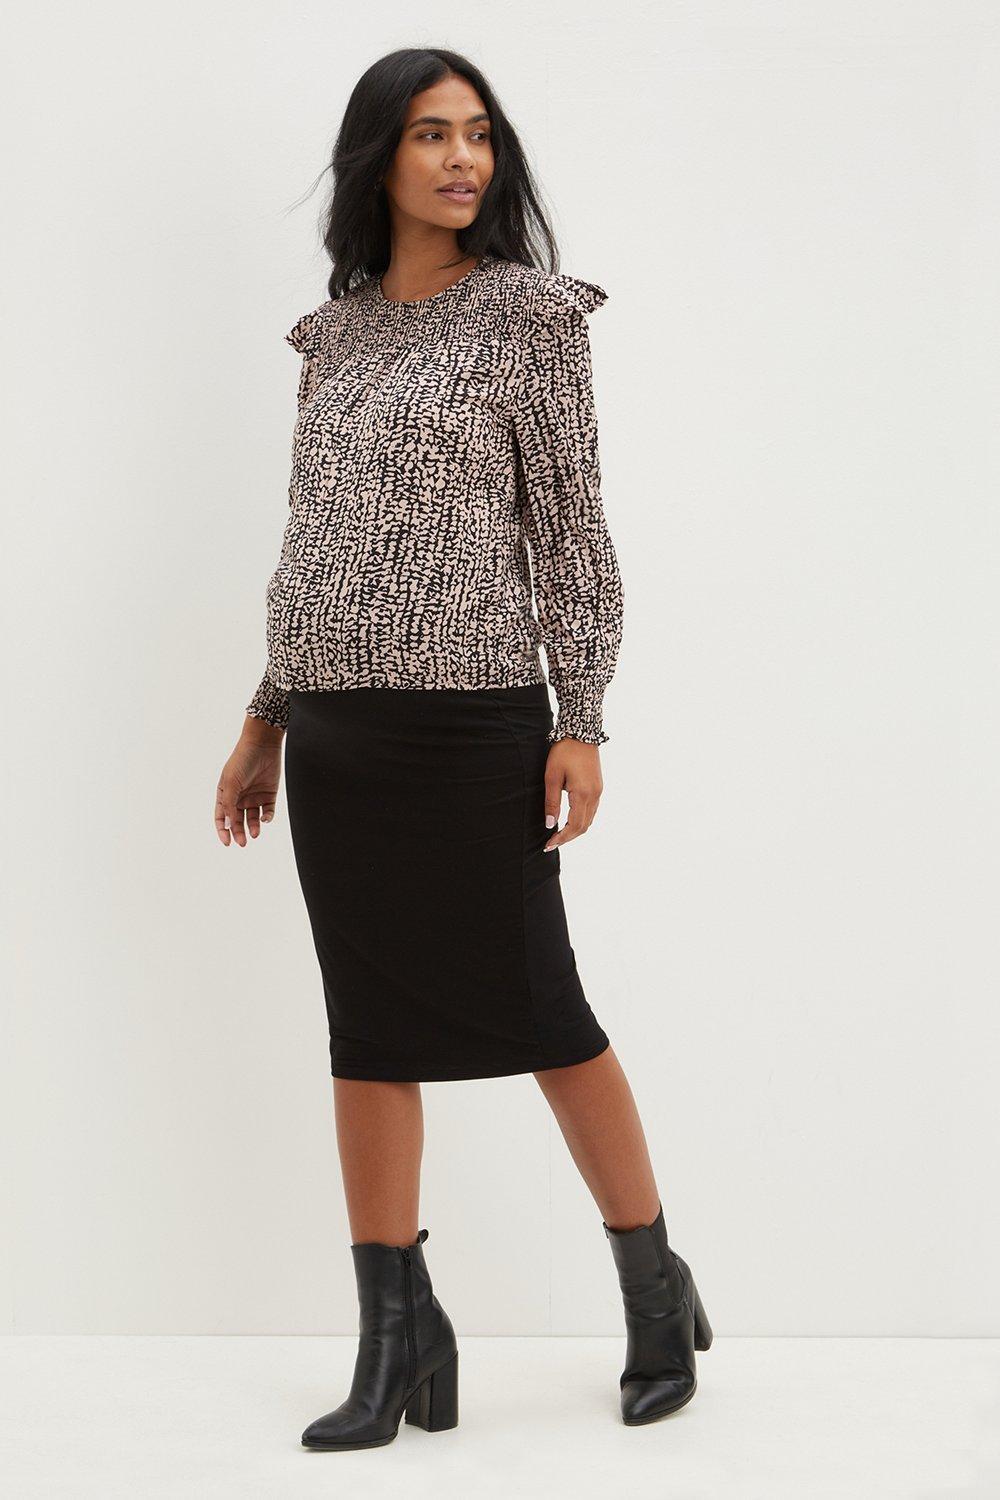 Maternity Black Midi Skirt. Wearing Length Approximately 77Cm. 93% Viscose, 7% Elastane. Machine Washable.